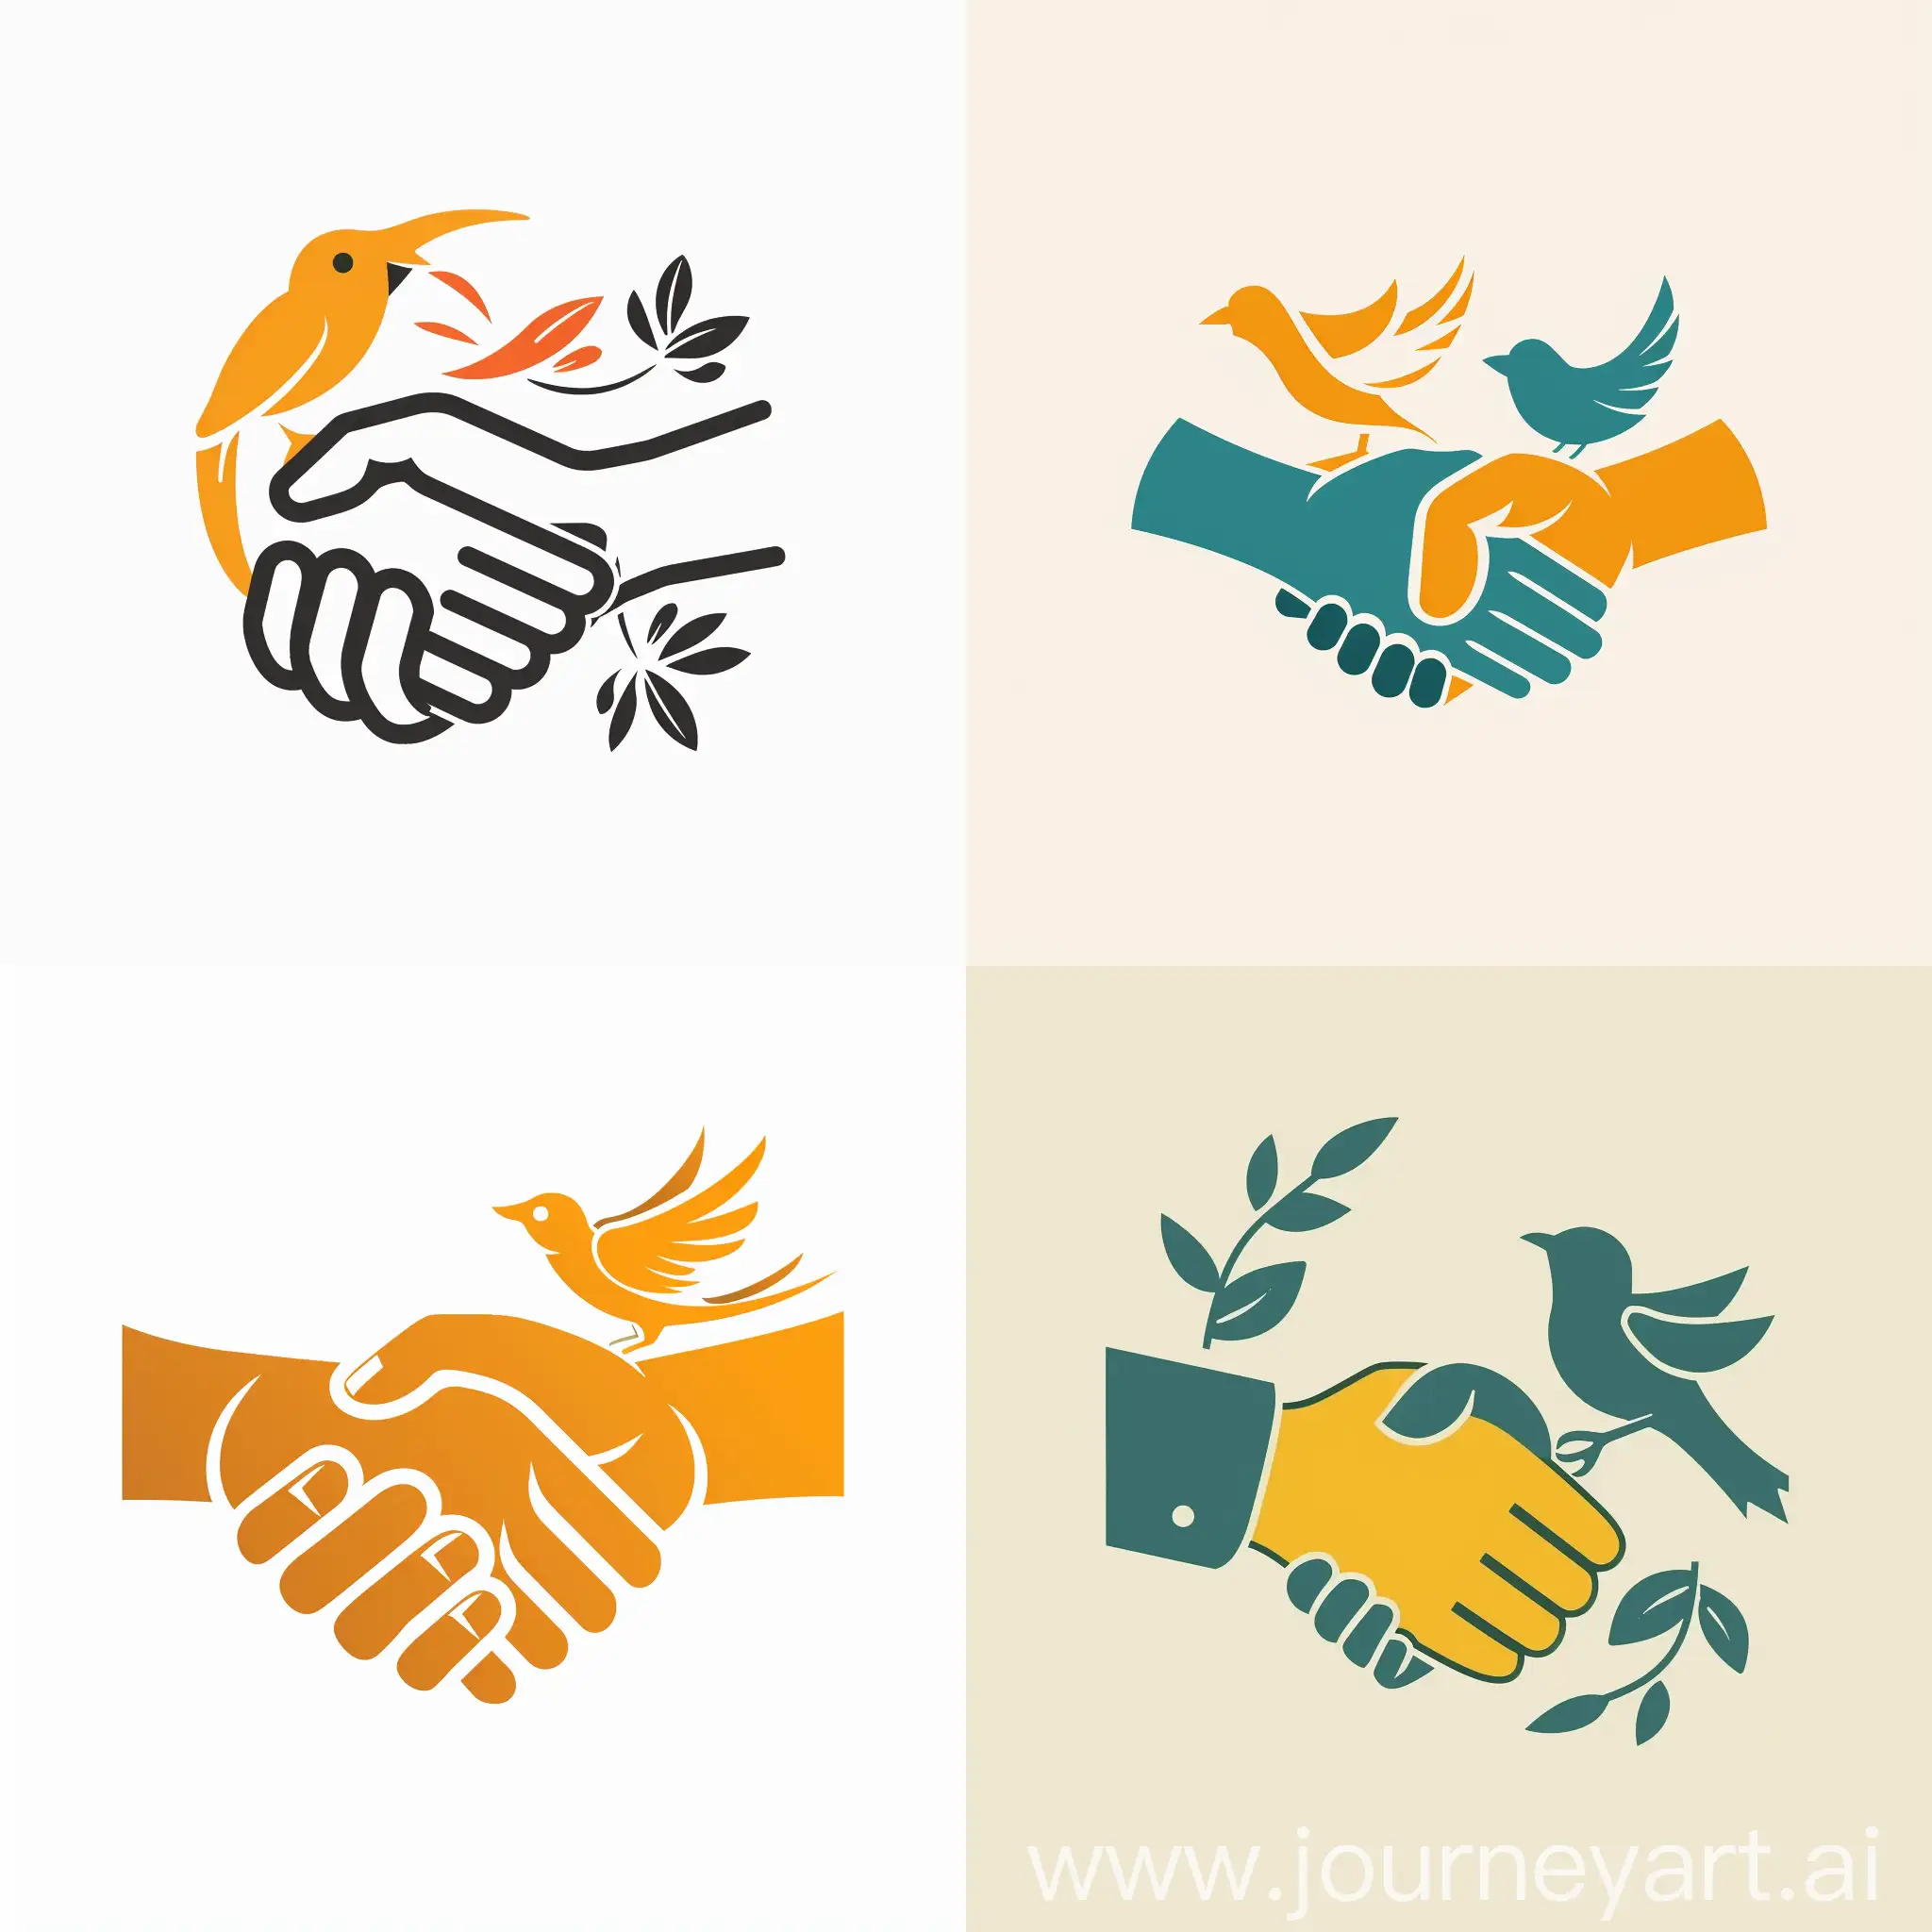 Empowering-Partnerships-NonProfit-Logo-with-Symbolic-Handshake-and-Bird